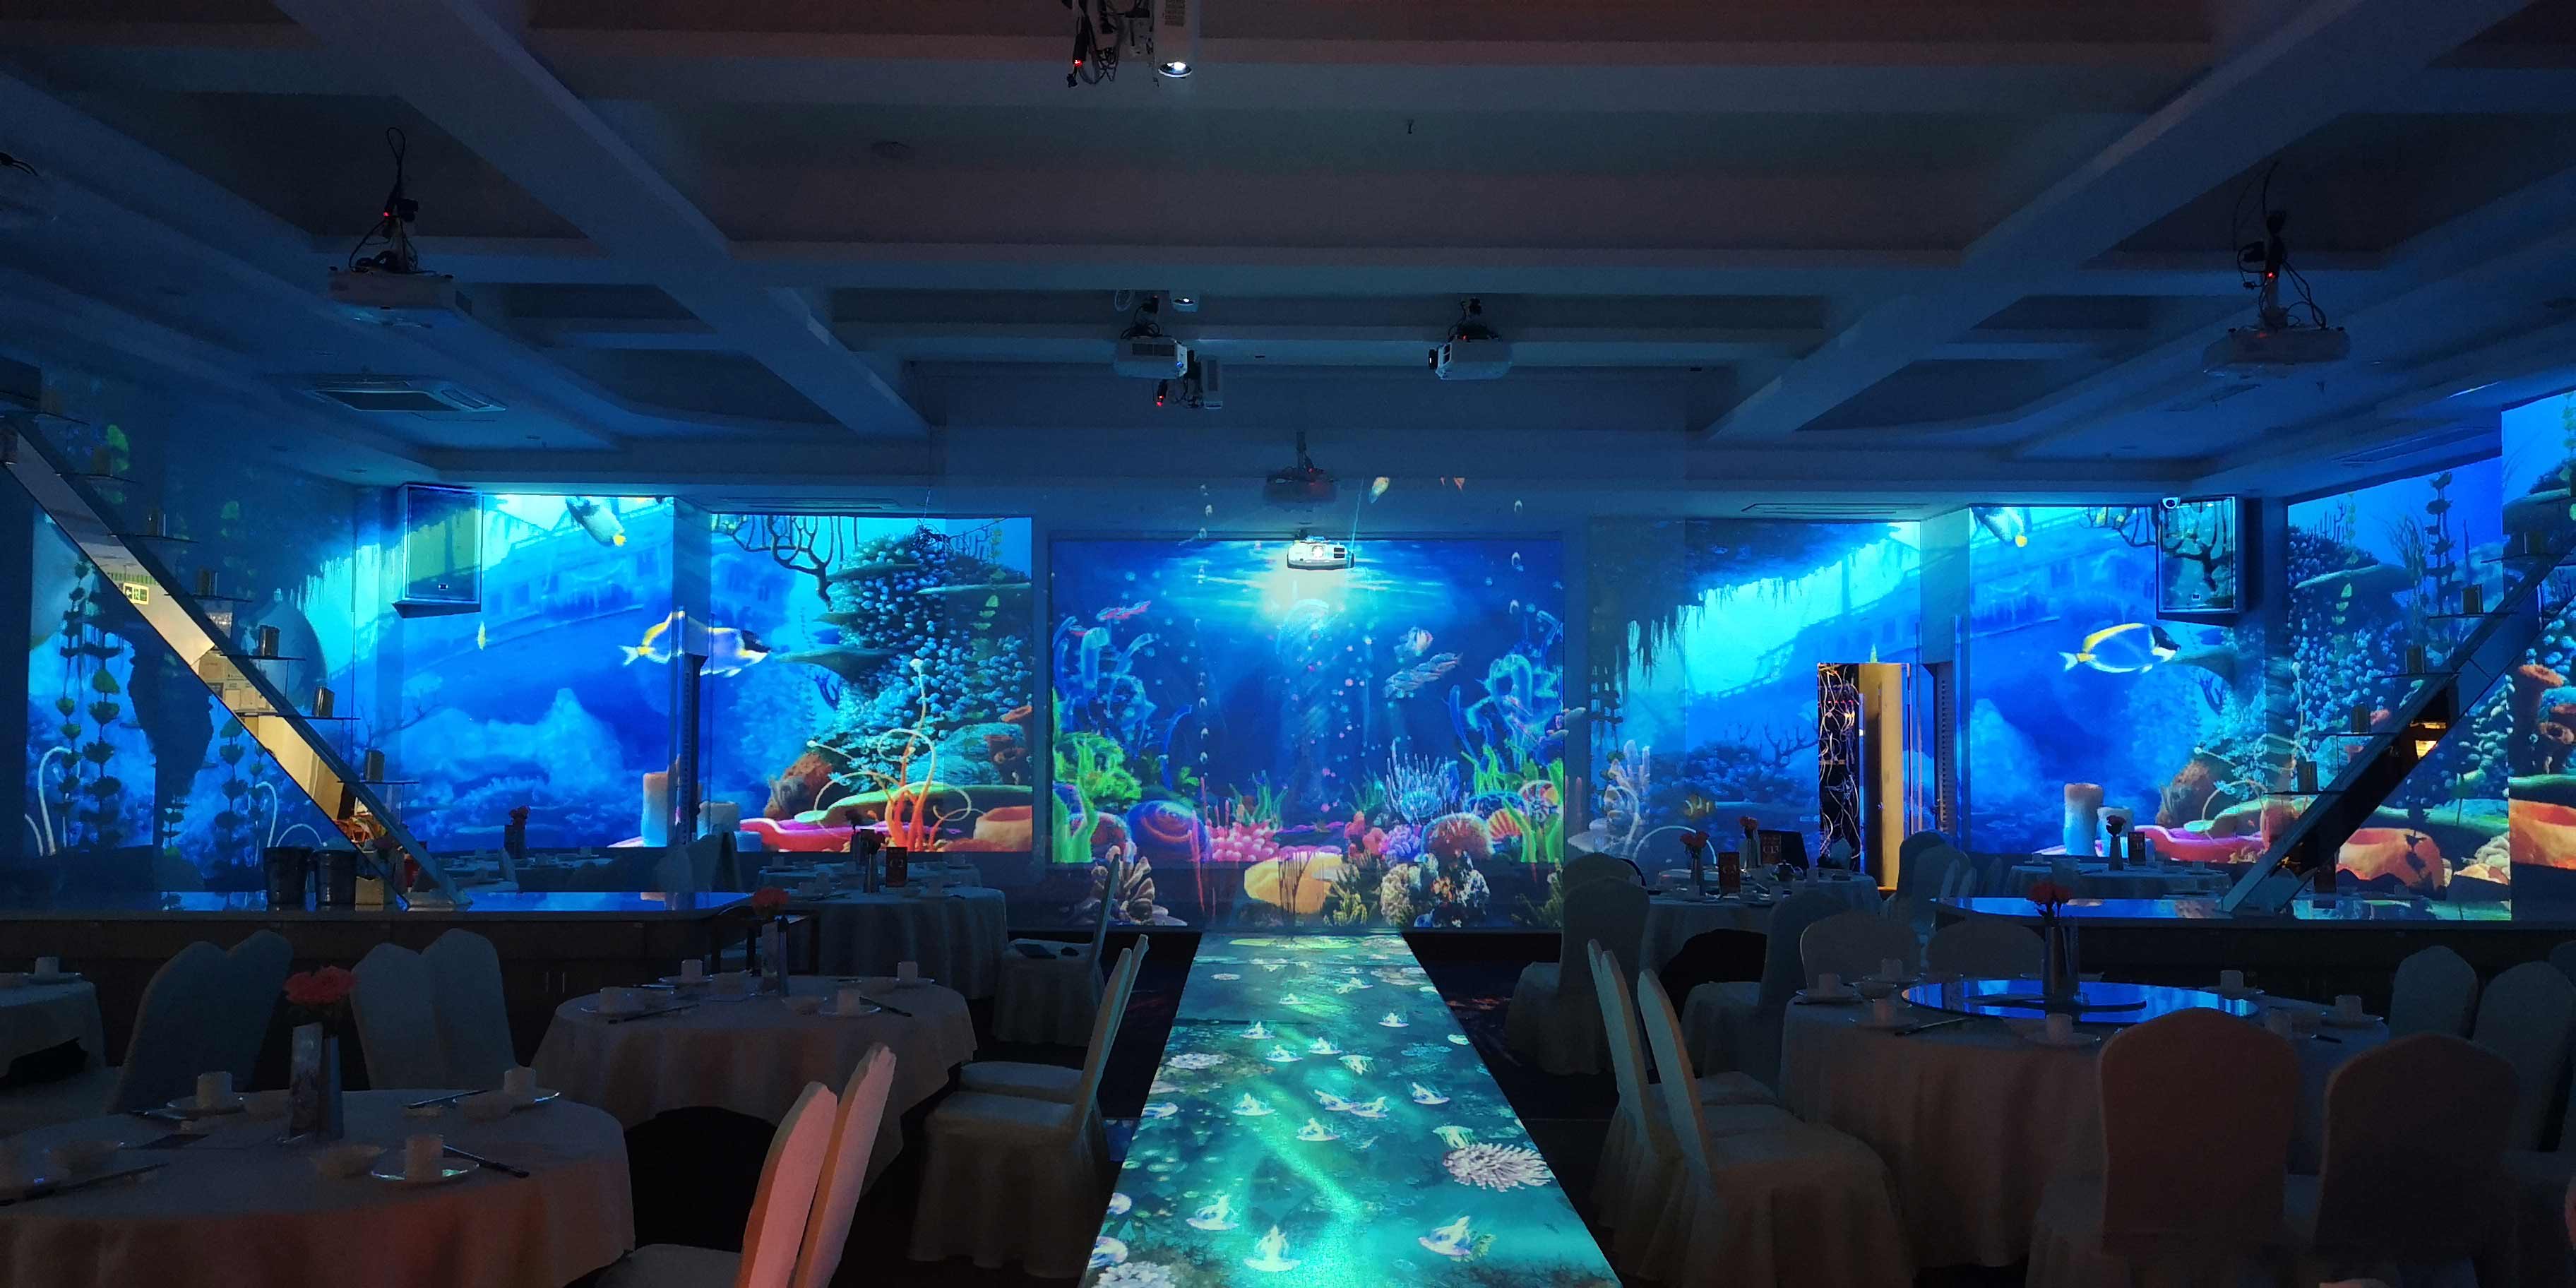 5D全息投影酒店宴会厅——酒店宴会厅的创新项目